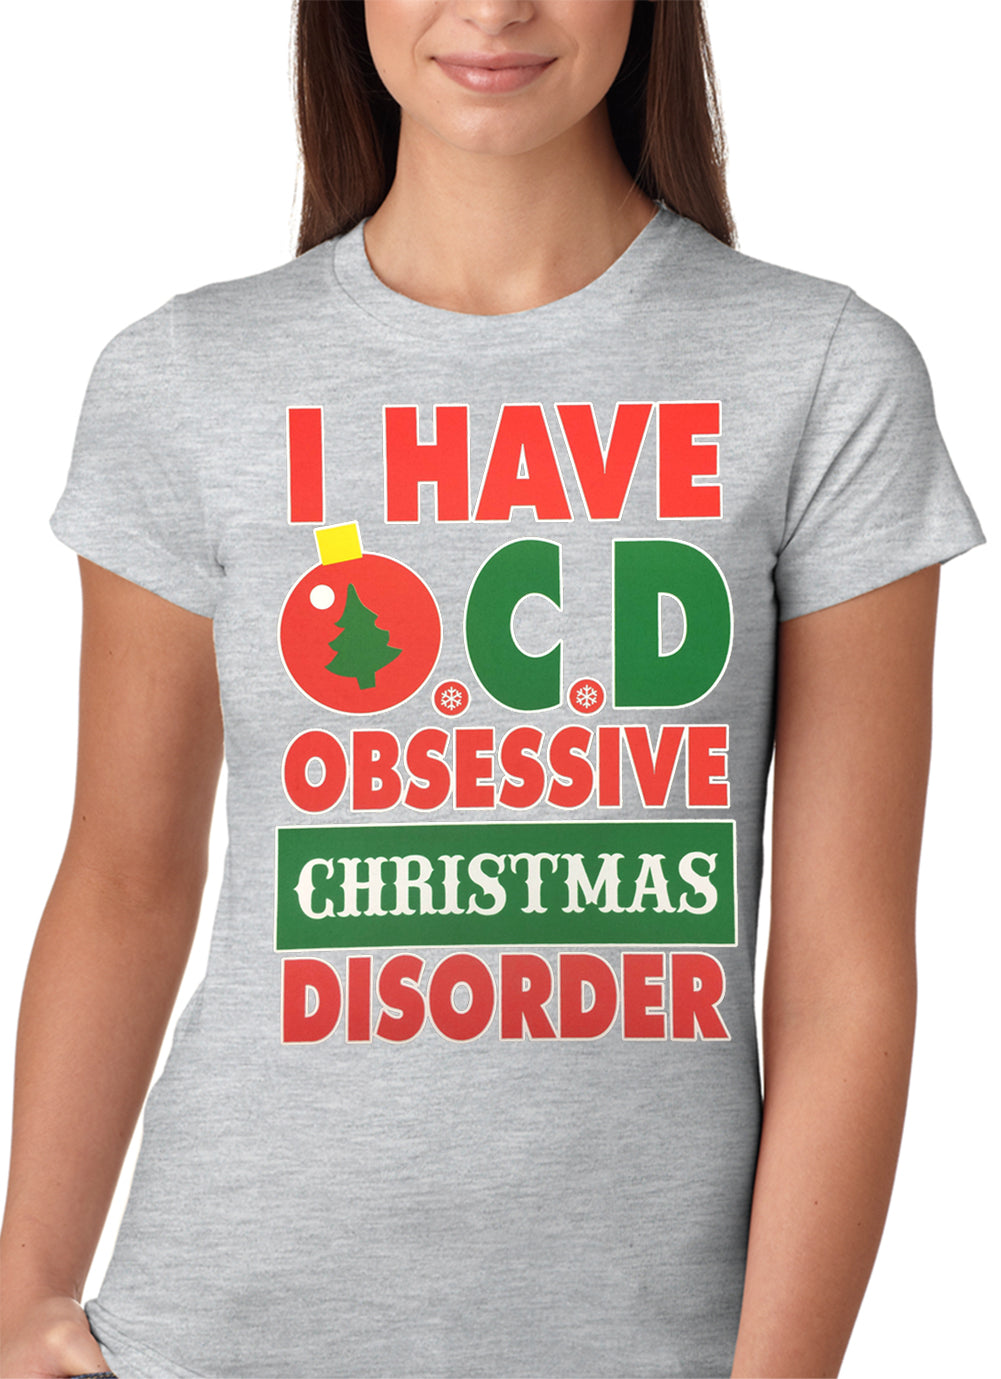 OCD--Obsessive Christmas Disorder Girls T-shirt